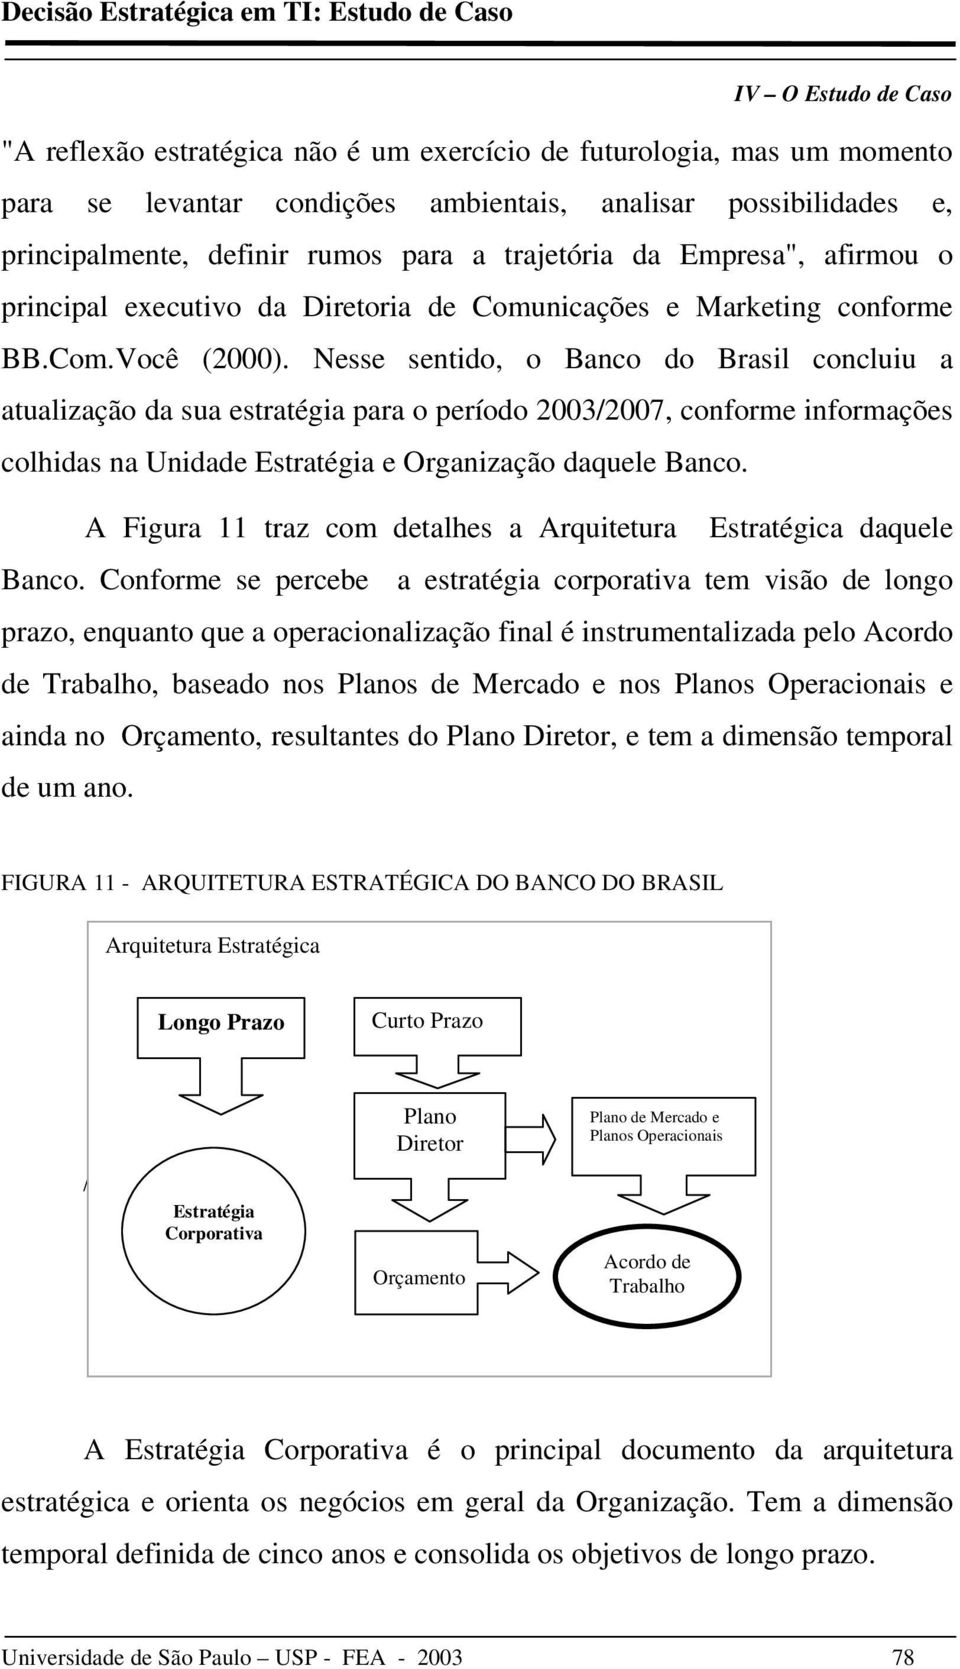 Nesse sentido, o Banco do Brasil concluiu a atualização da sua estratégia para o período 2003/2007, conforme informações colhidas na Unidade Estratégia e Organização daquele Banco.